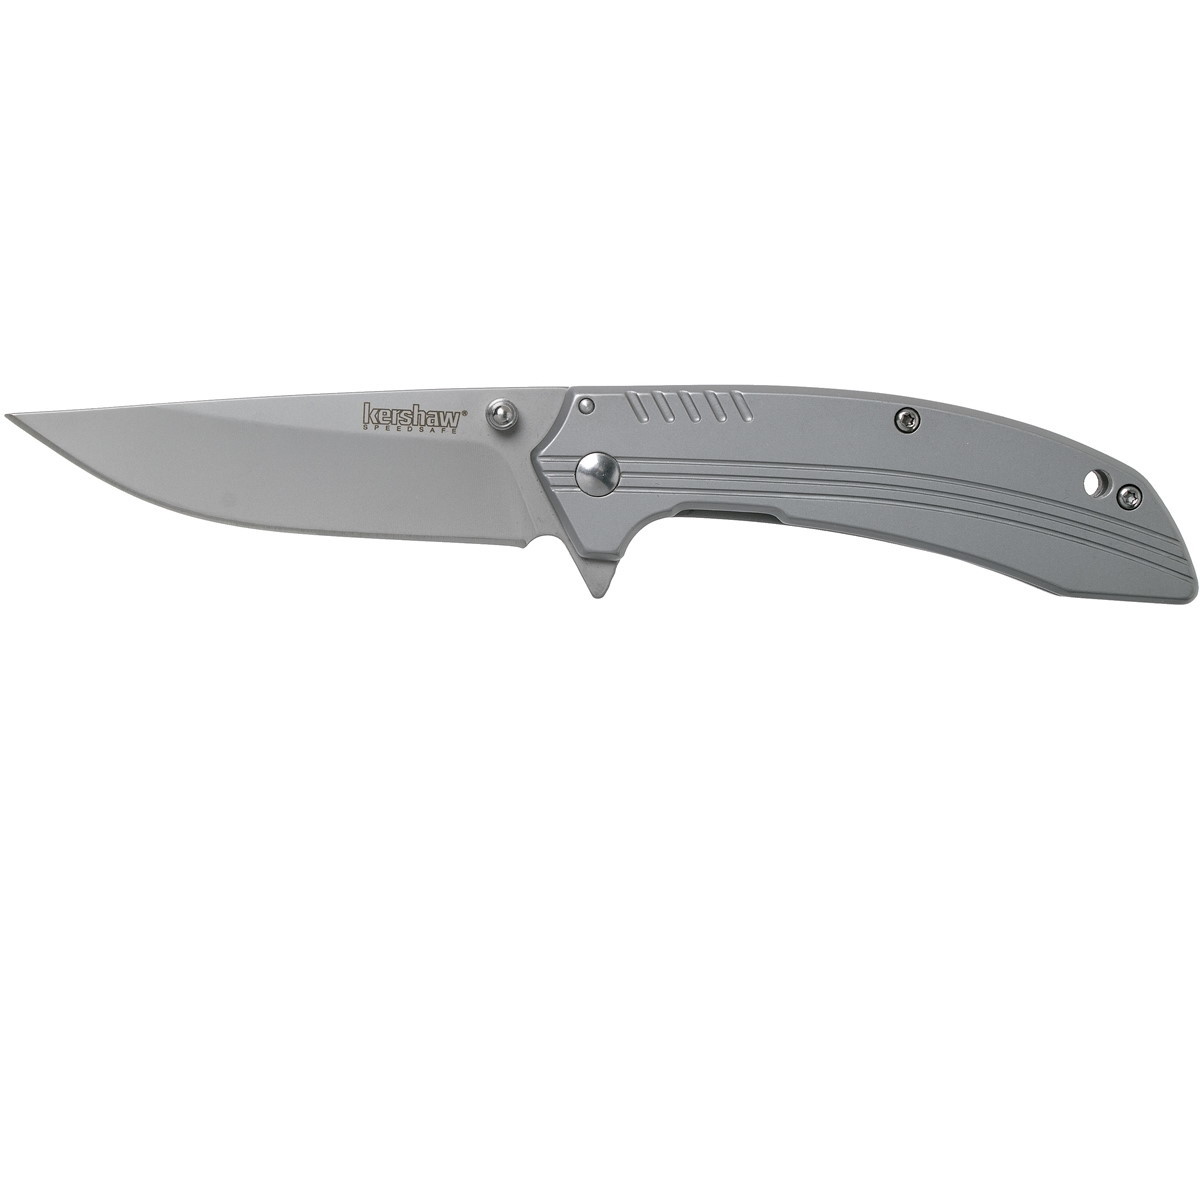 Полуавтоматический складной нож Kershaw Shroud, сталь 8Cr13MoV, рукоять нержавеющая сталь - фото 1